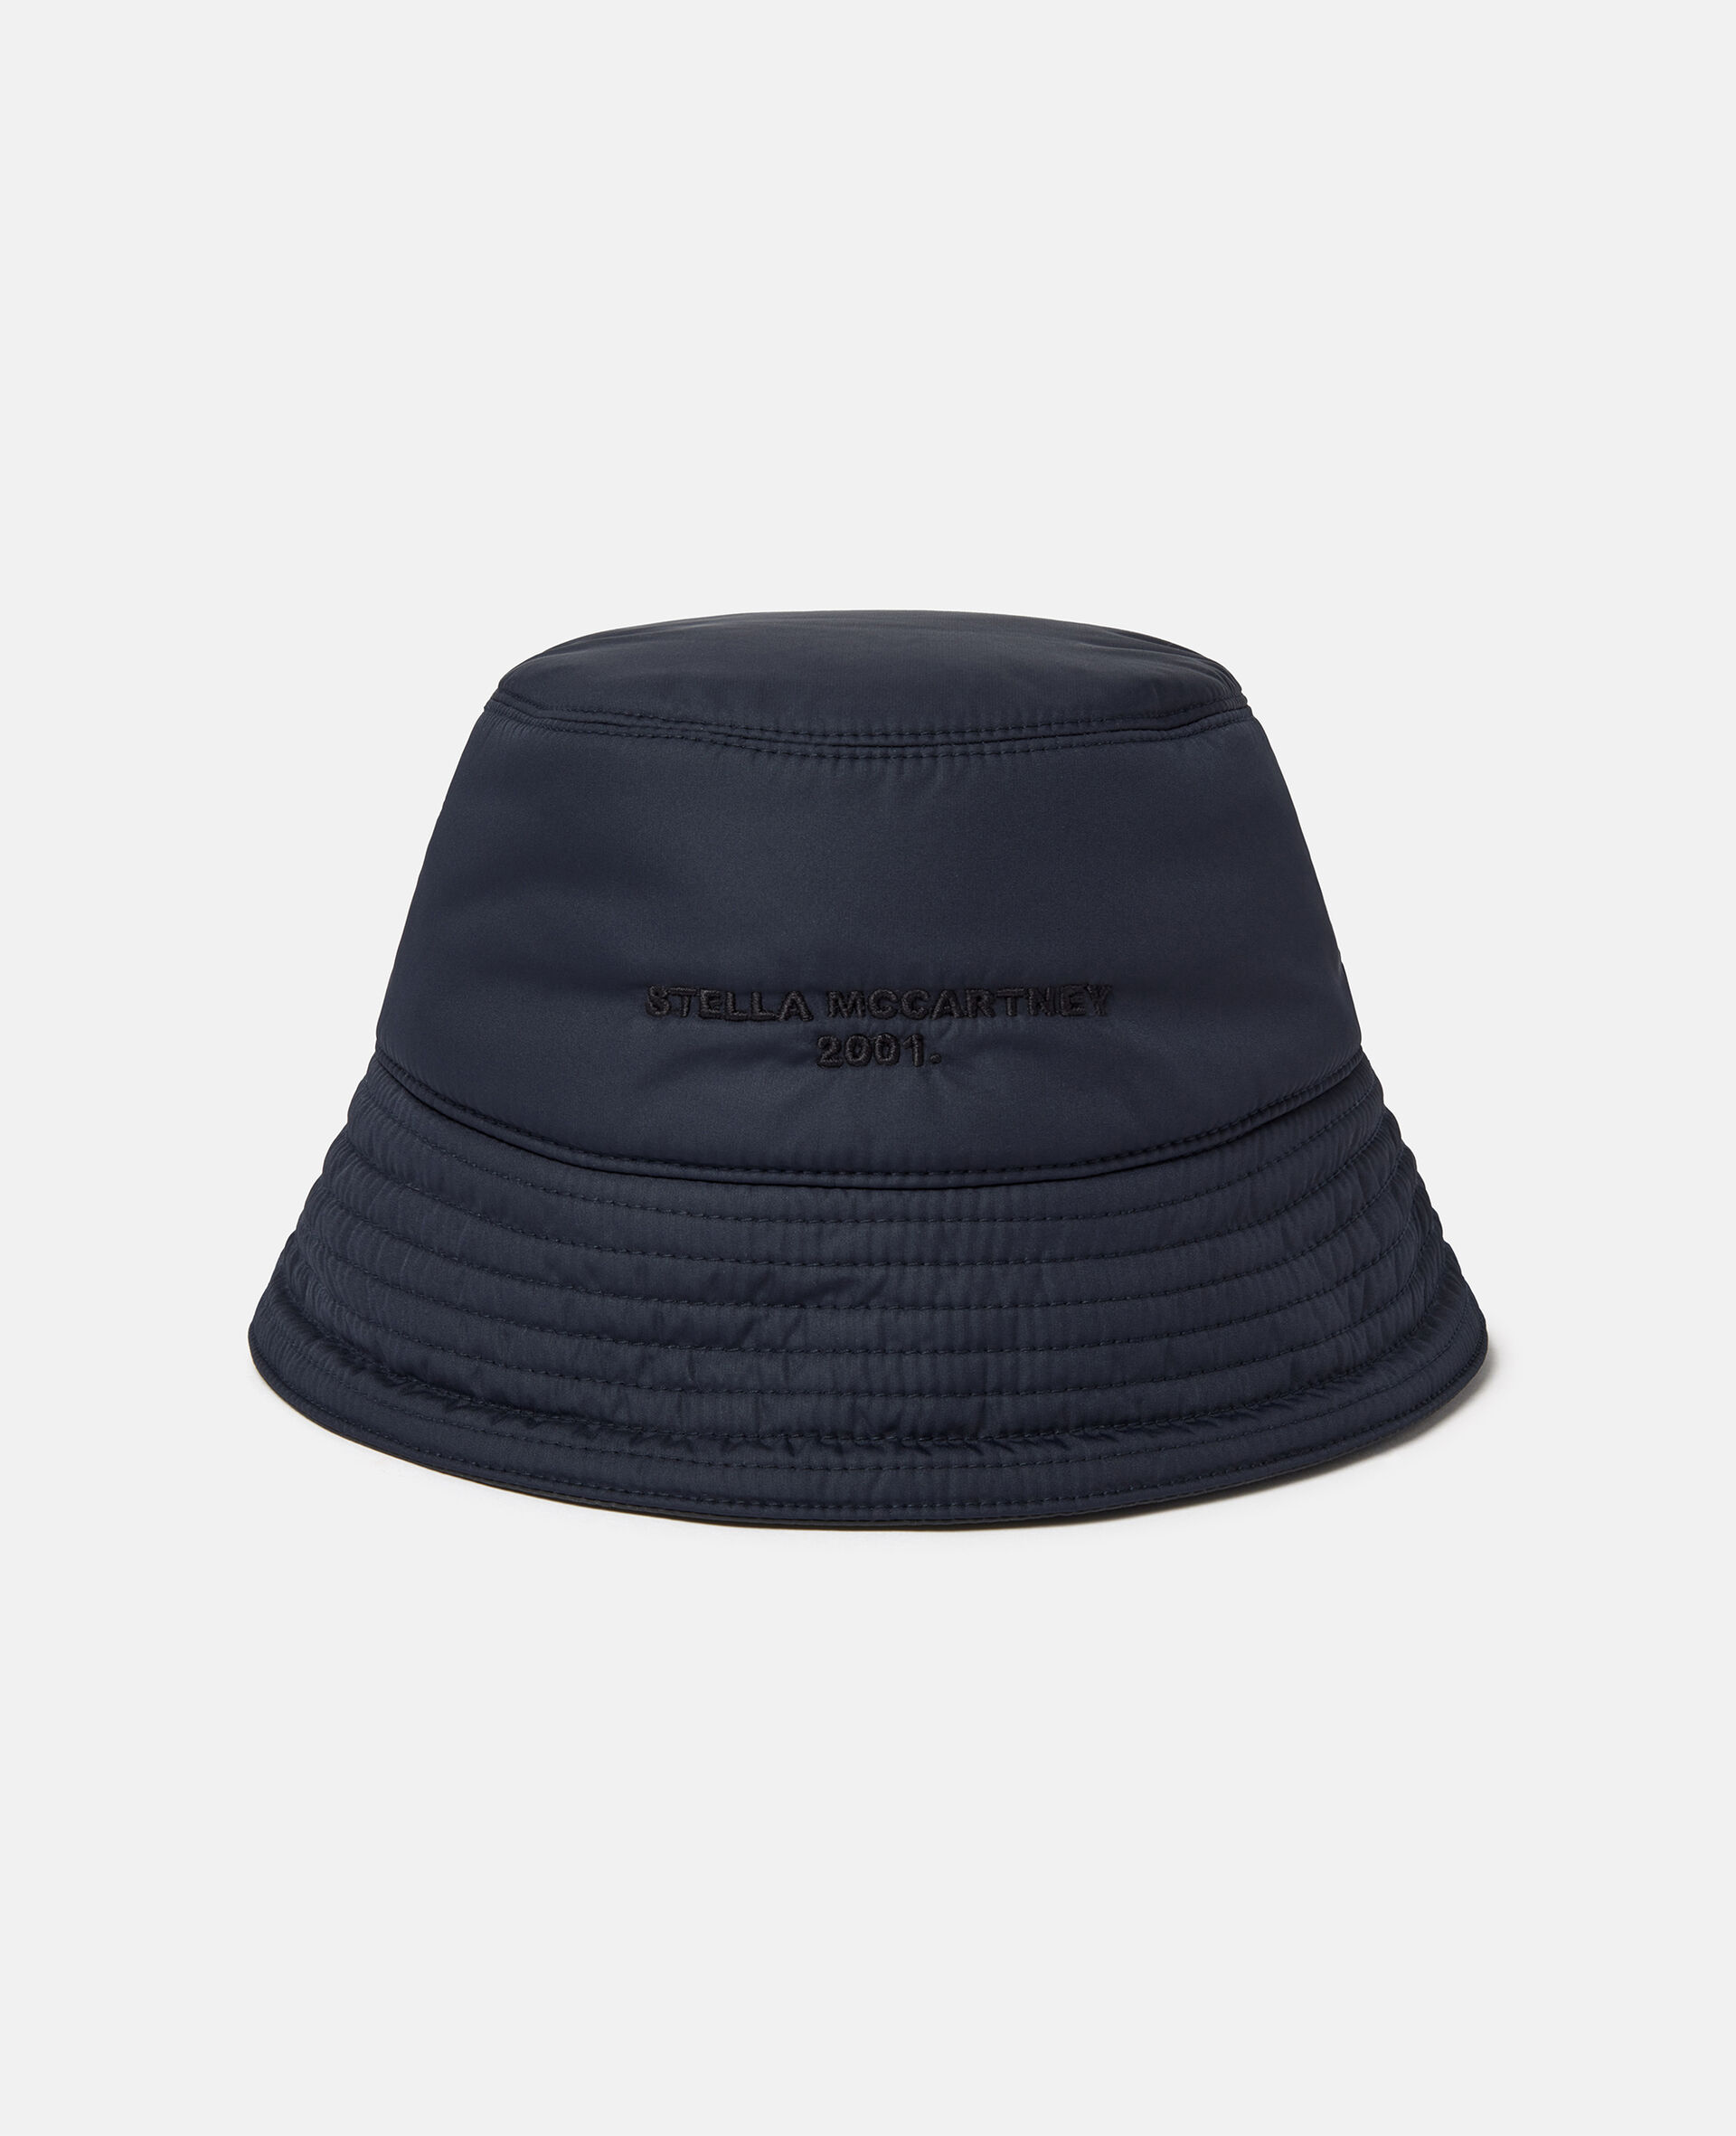 双面徽标蓬松生态尼龙渔夫帽-黑色-large